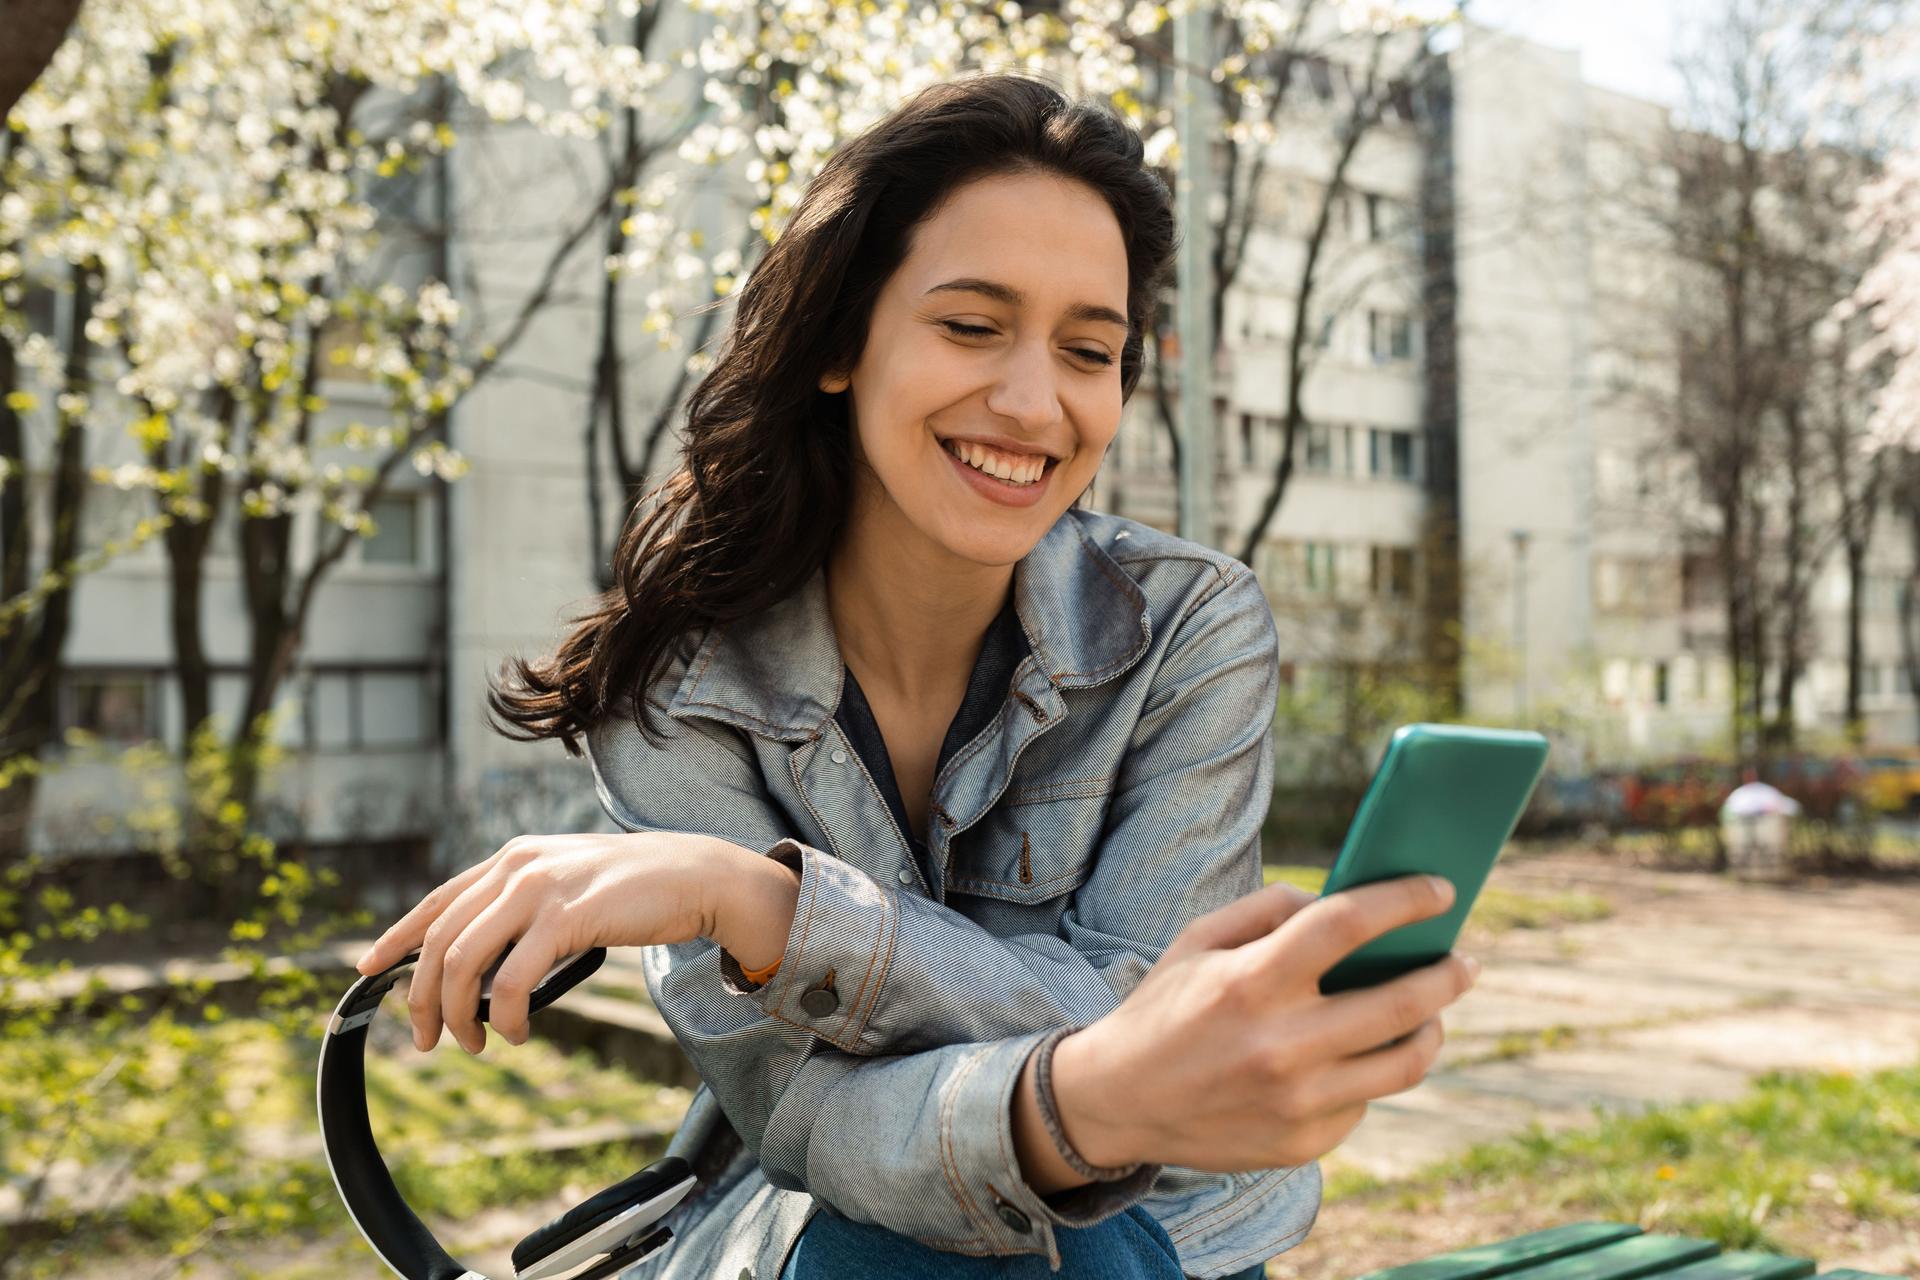 EIne junge schwarzhaarige Frau, auf ihrem Fahrrad schaut lächelnd auf ihr Smartphone. Im Hintergrund blühende Bäume und Sträucher.